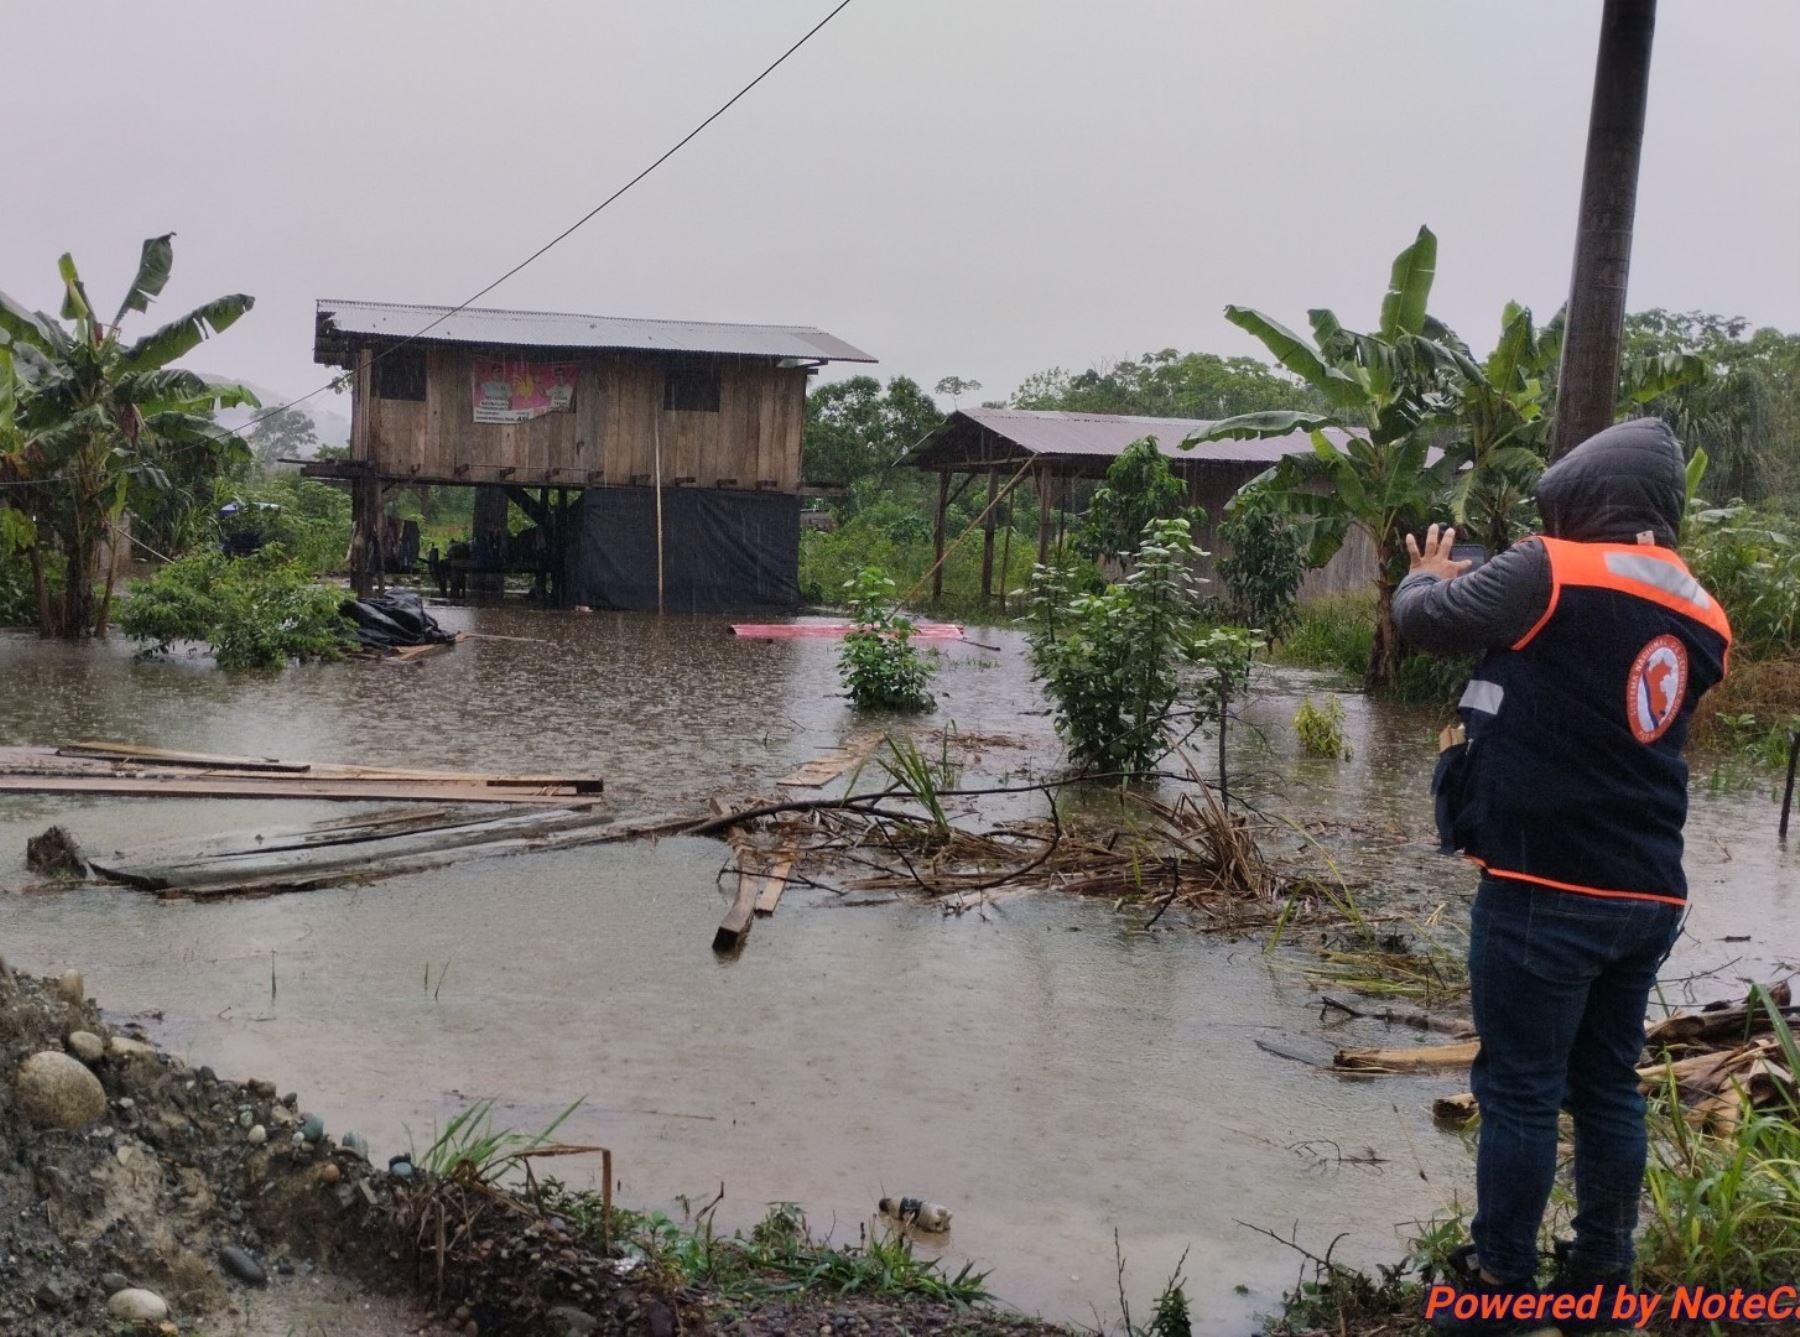 Lluvias intensas provocaron el desborde de dos ríos, afectando a 112 viviendas, un tramo vial y 135 hectáreas de cultivos en el distrito de La Morada, región Huánuco. ANDINA/Difusión